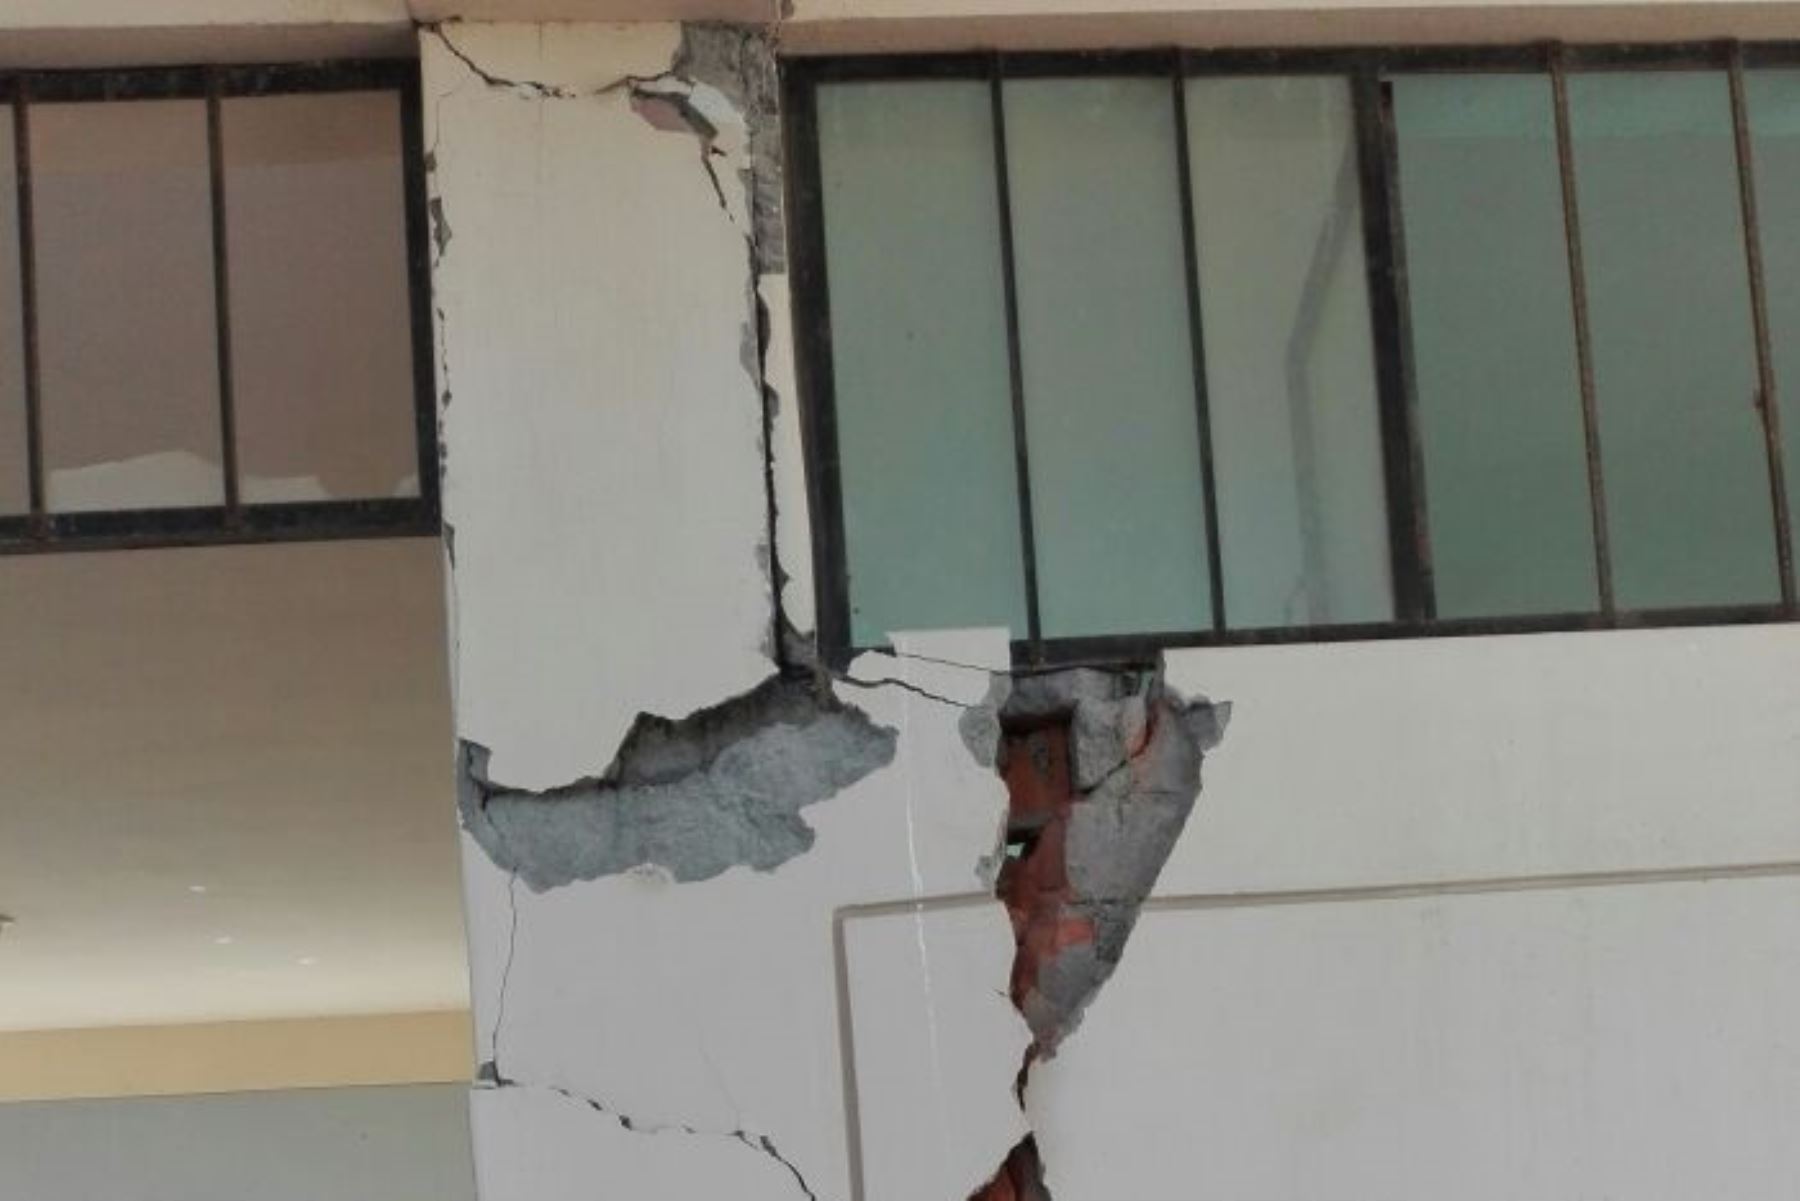 La infraestructura de los establecimientos de salud ha sufrido rajaduras, principalmente. Foto:ANDINA/Difusión